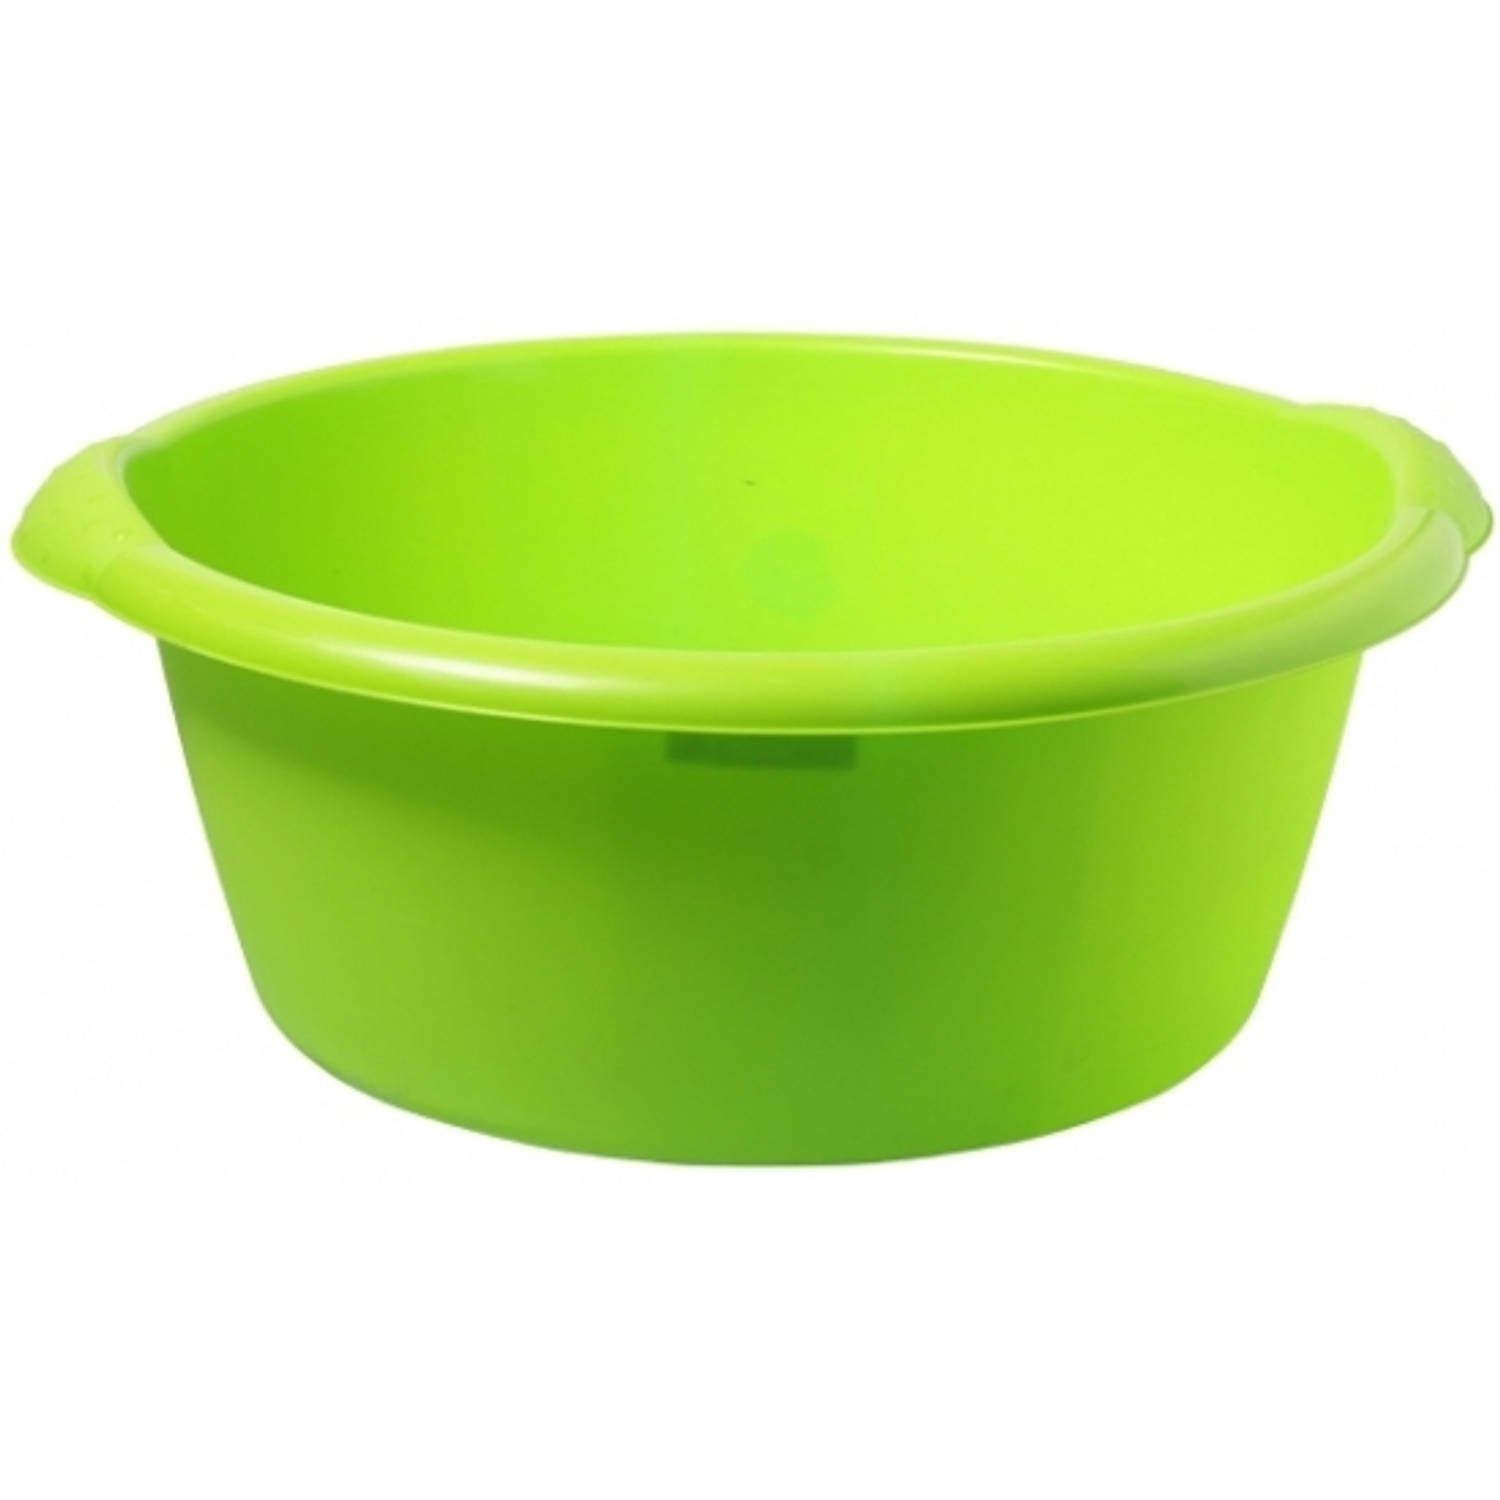 Grote afwasteil groen 25 l 50 cm